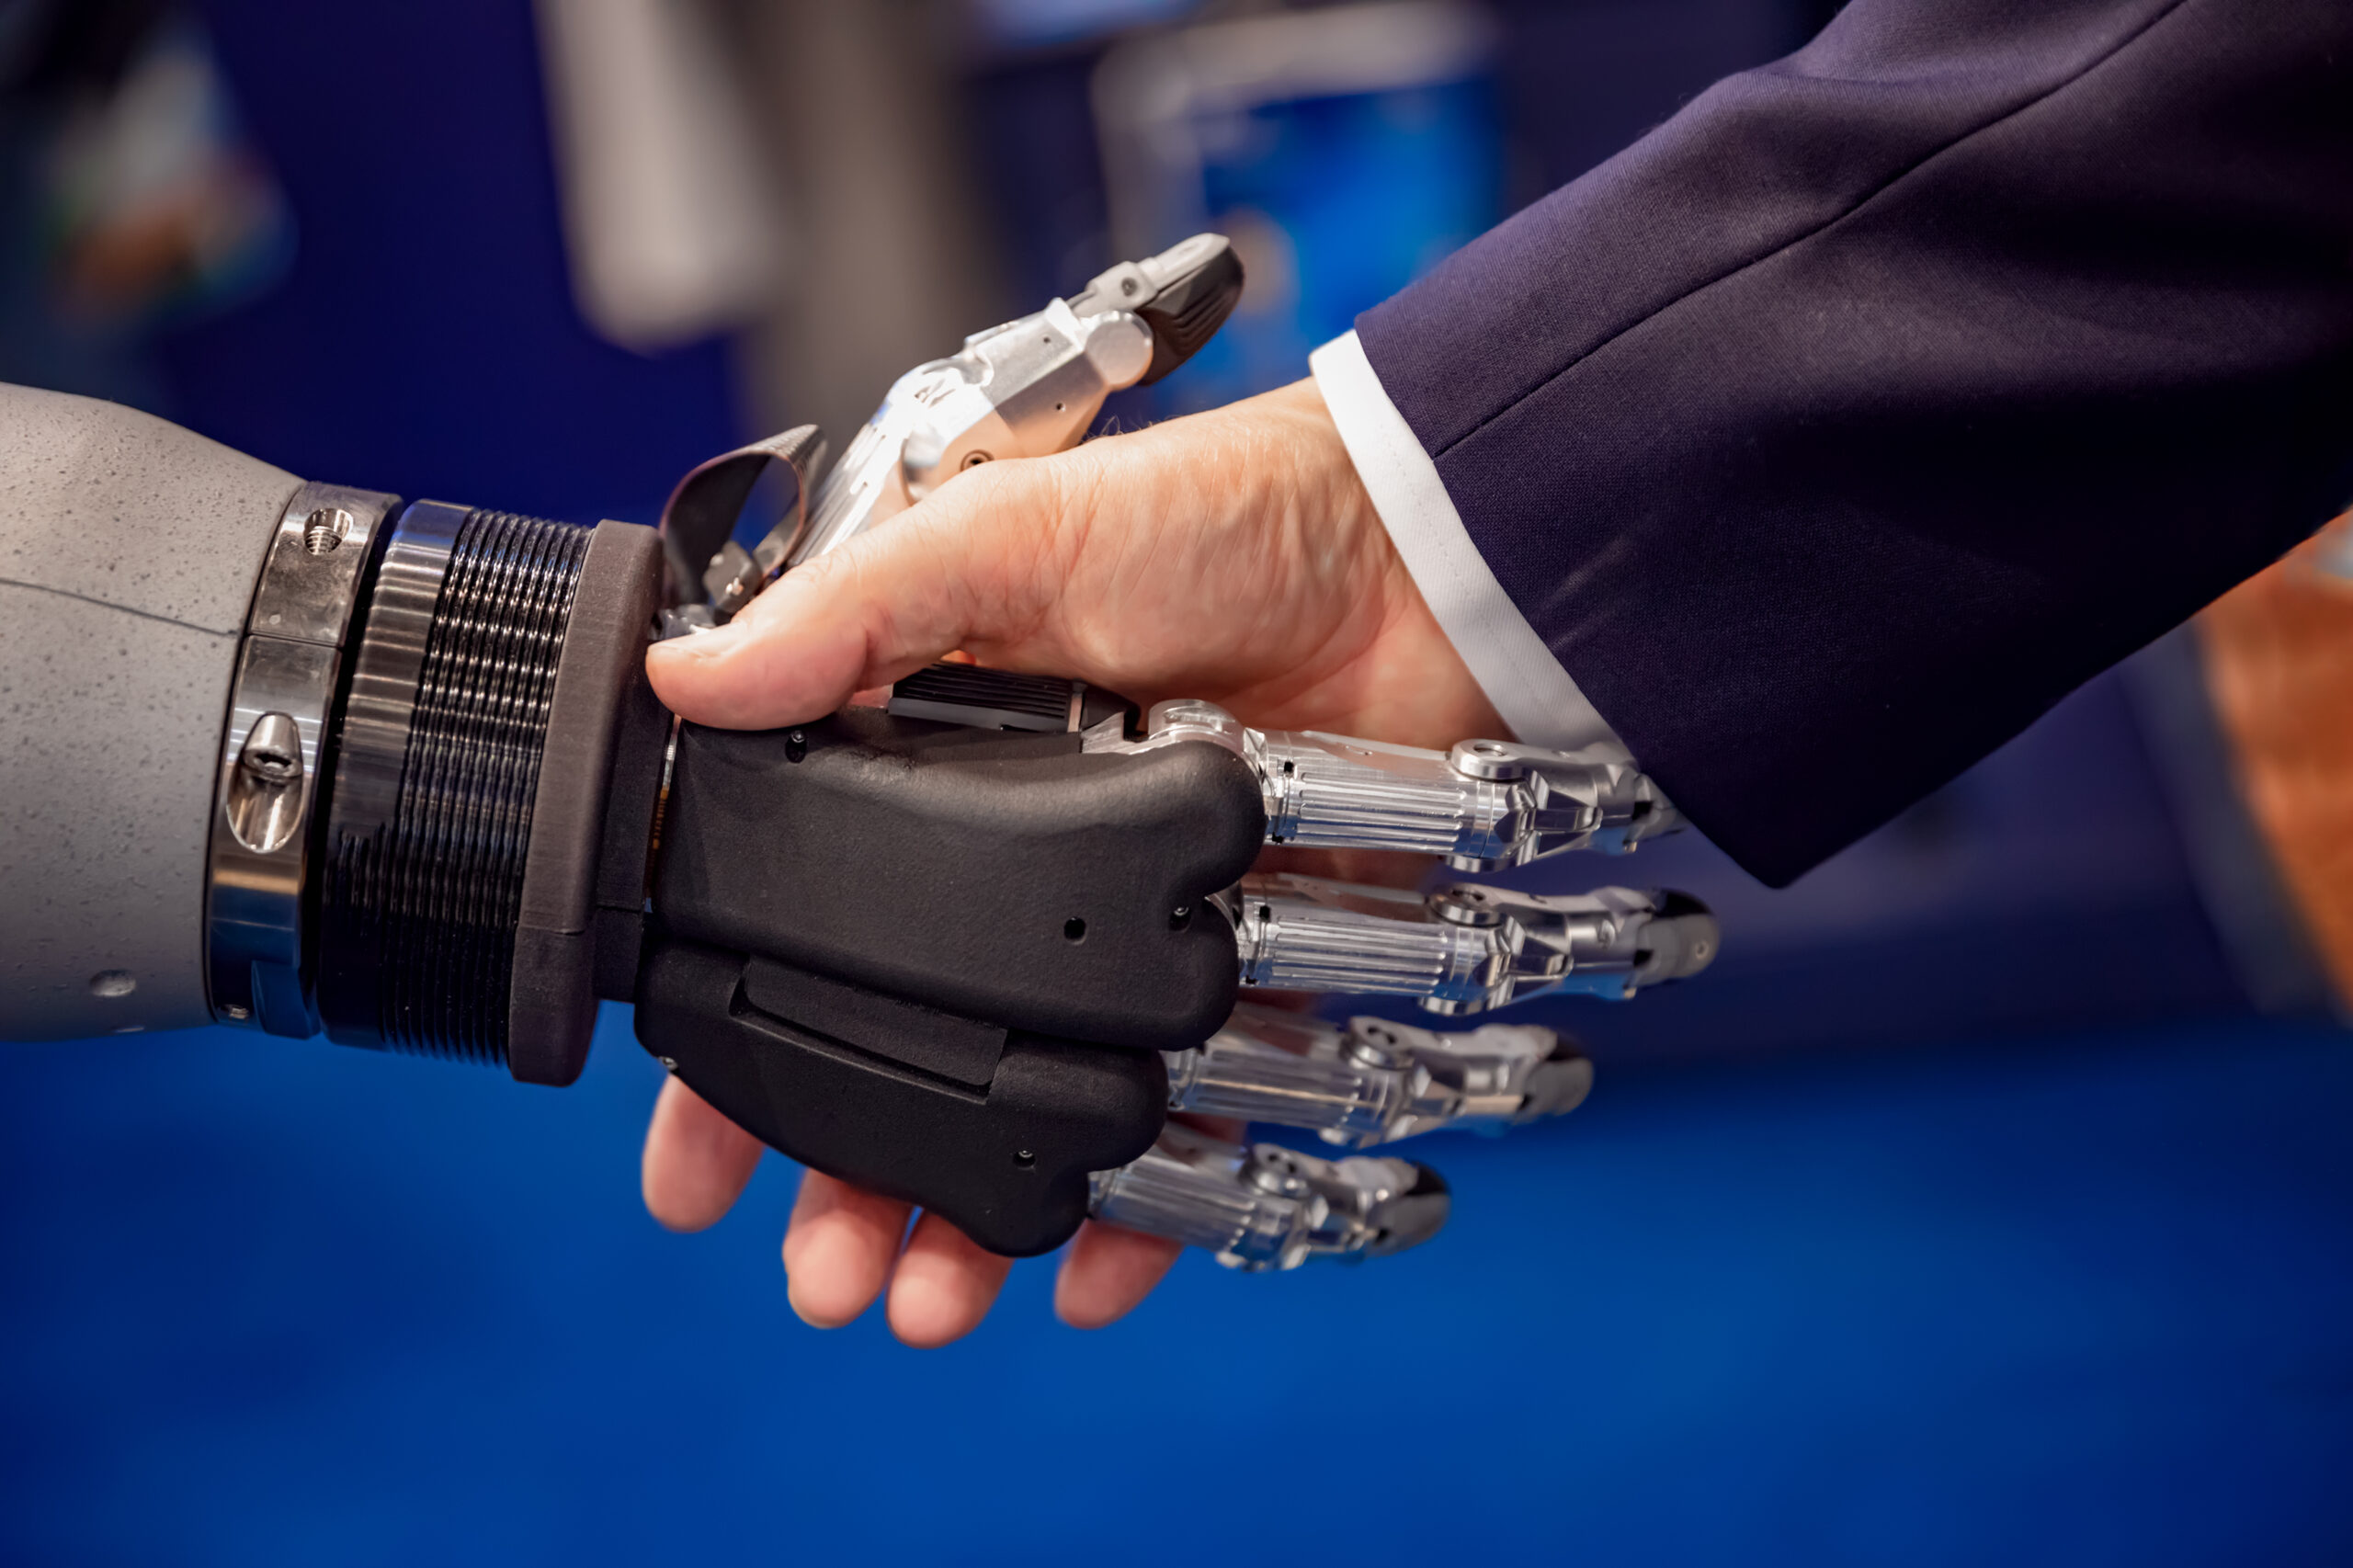 Algorithmen im Alltag: Mensch und Maschine geben sich die Hand